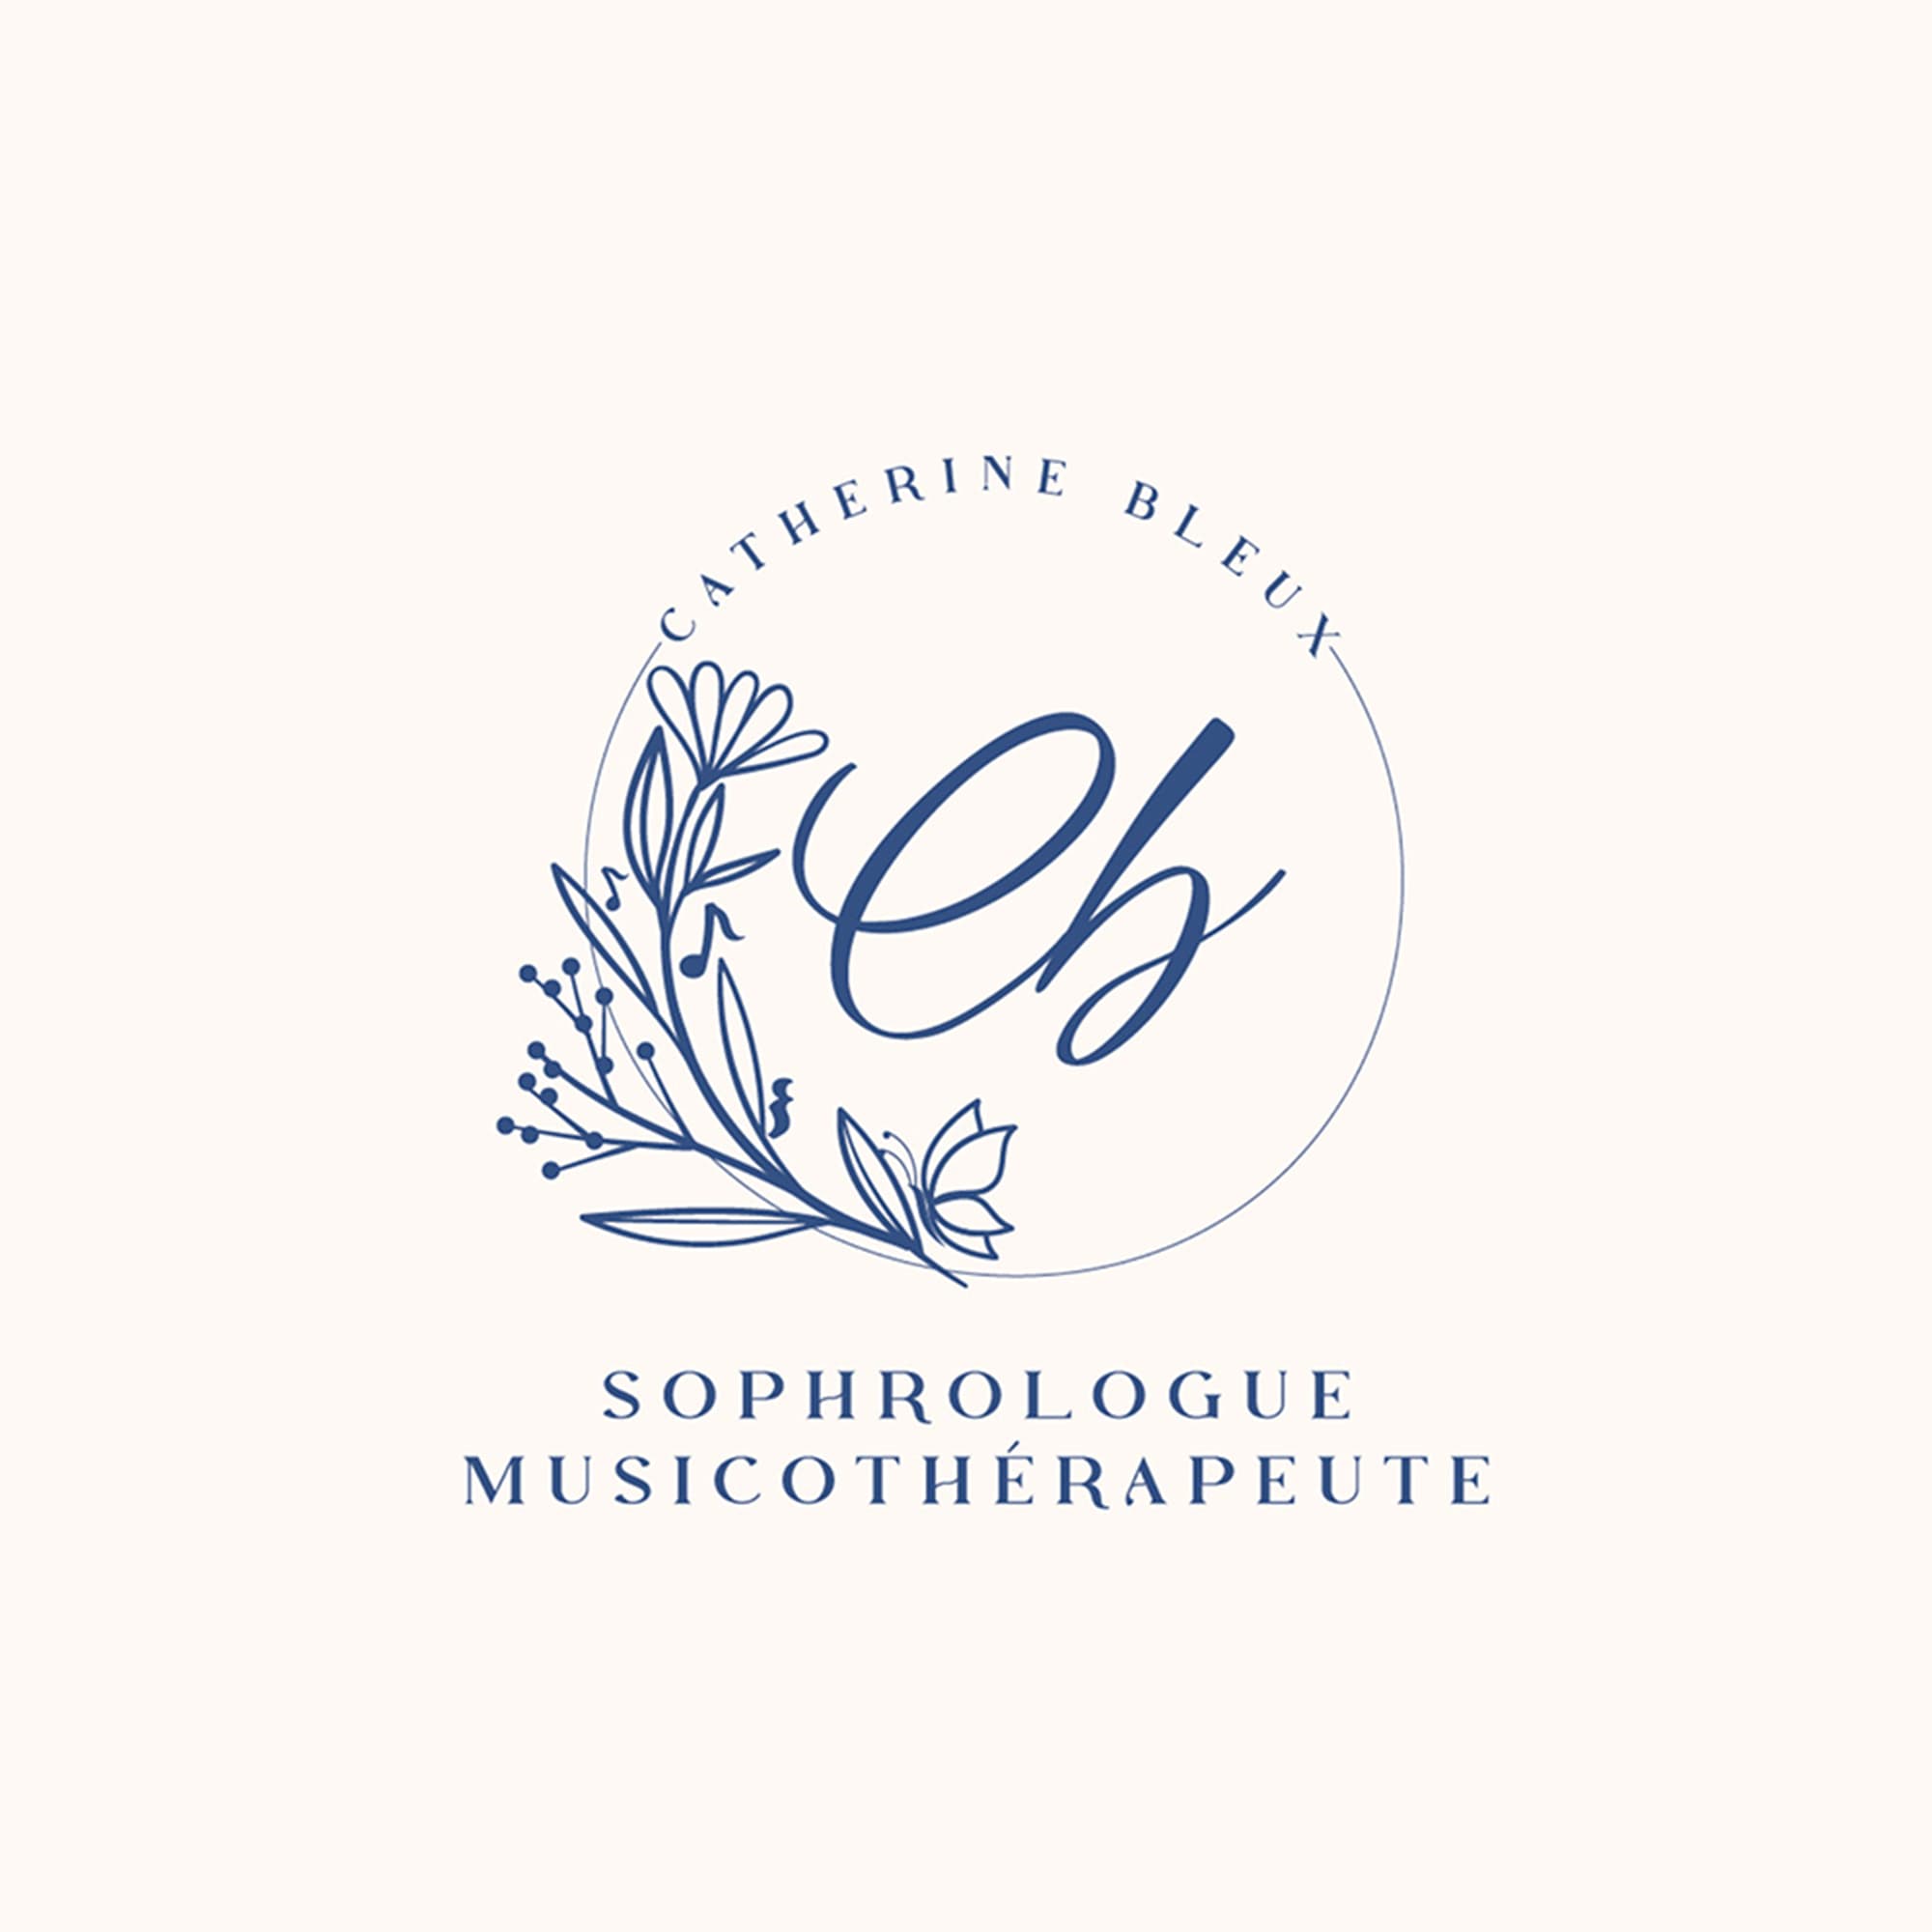 le logo de catherine bleux qui est une sophrologue et musicothérapeute